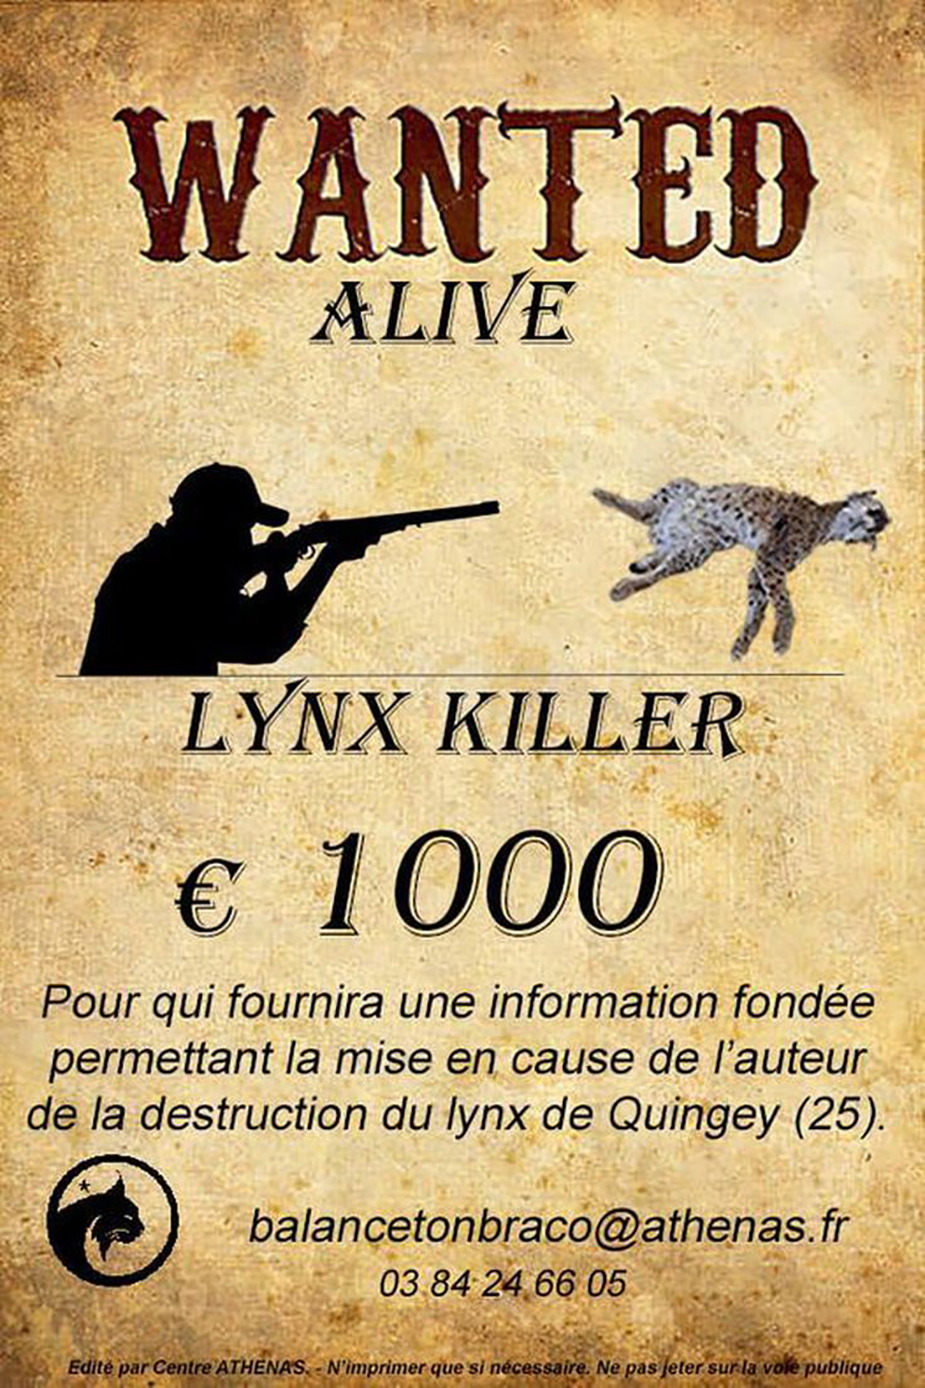 Les braconniers sont traqués par les chasseurs de prime en France voisine, avec une récompense de 1000 euros à la clé.